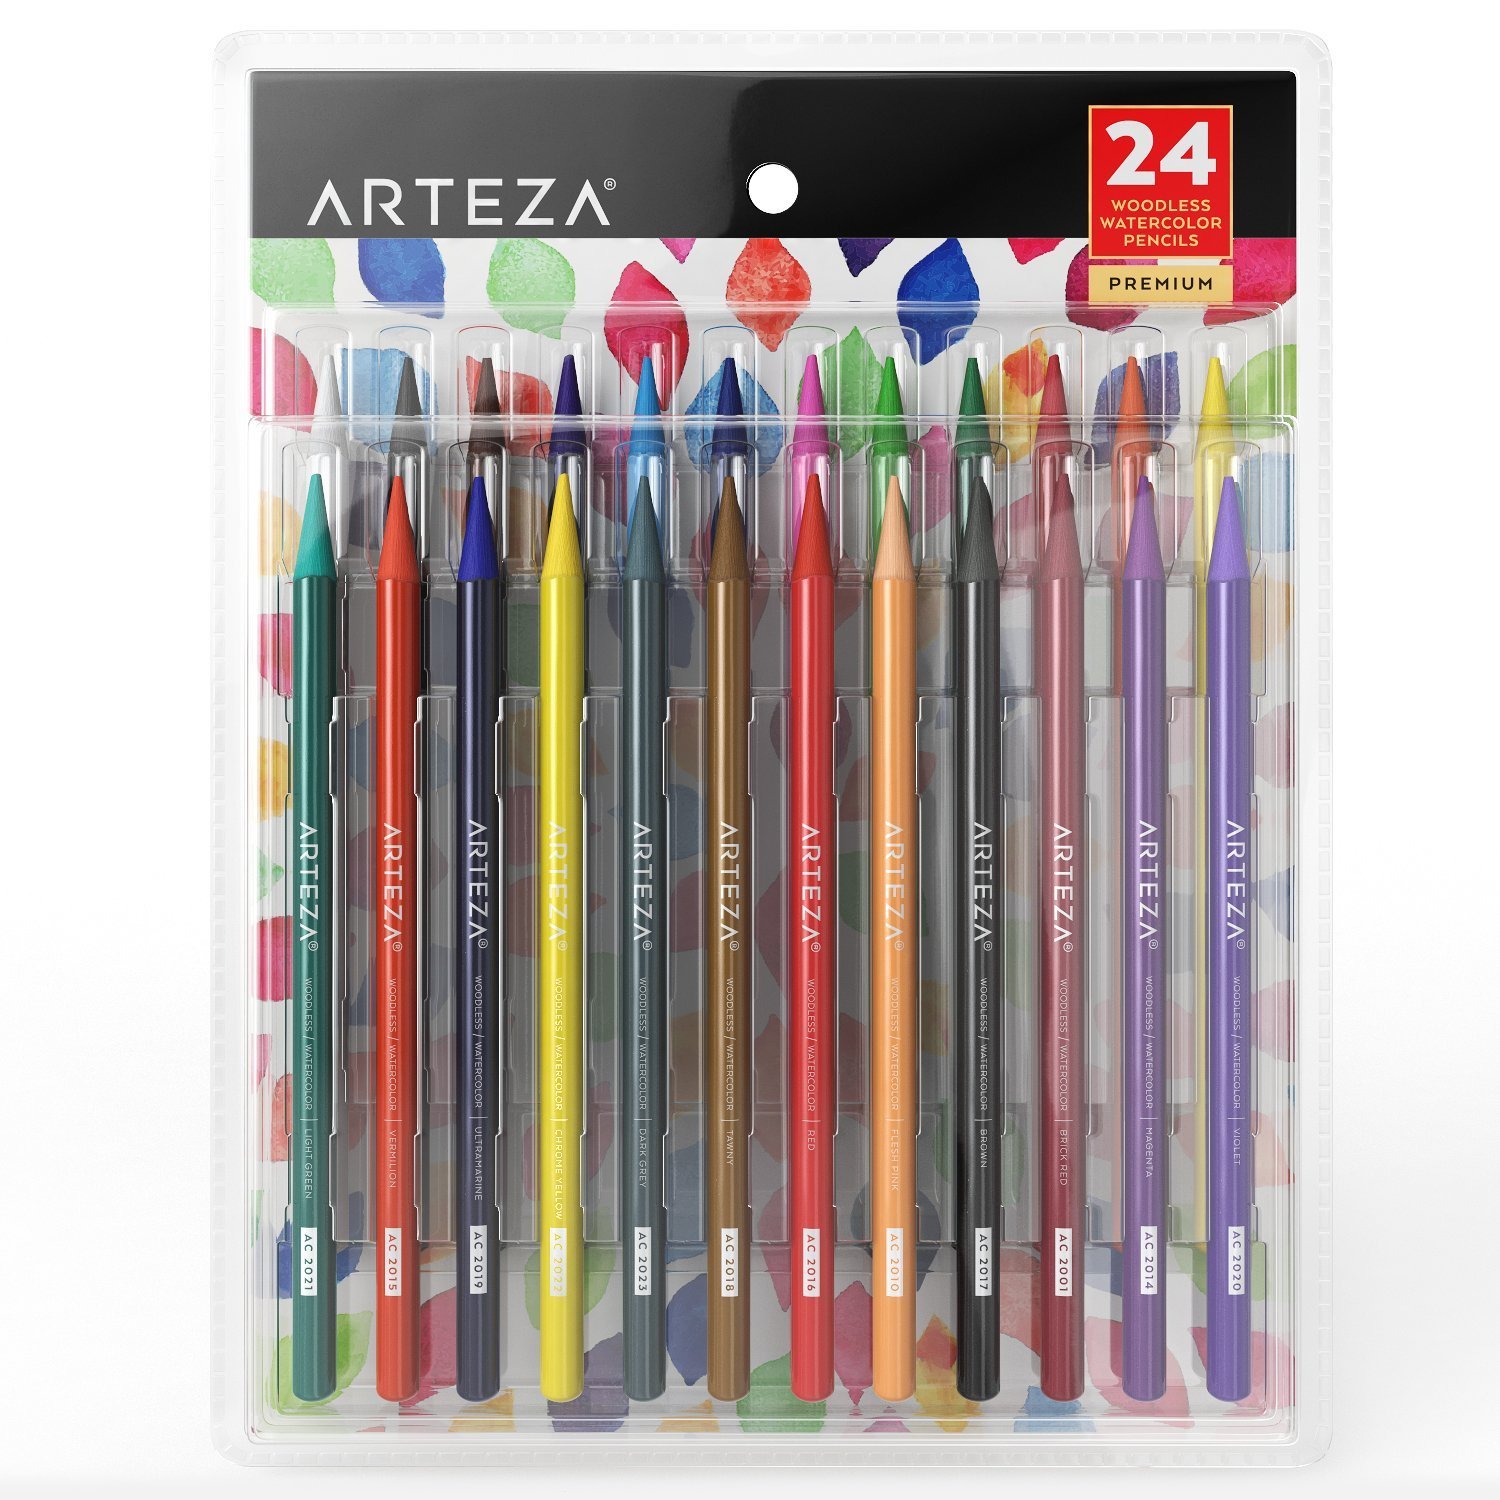 Arteza Woodless Watercolor Pencil Set, 24-Count